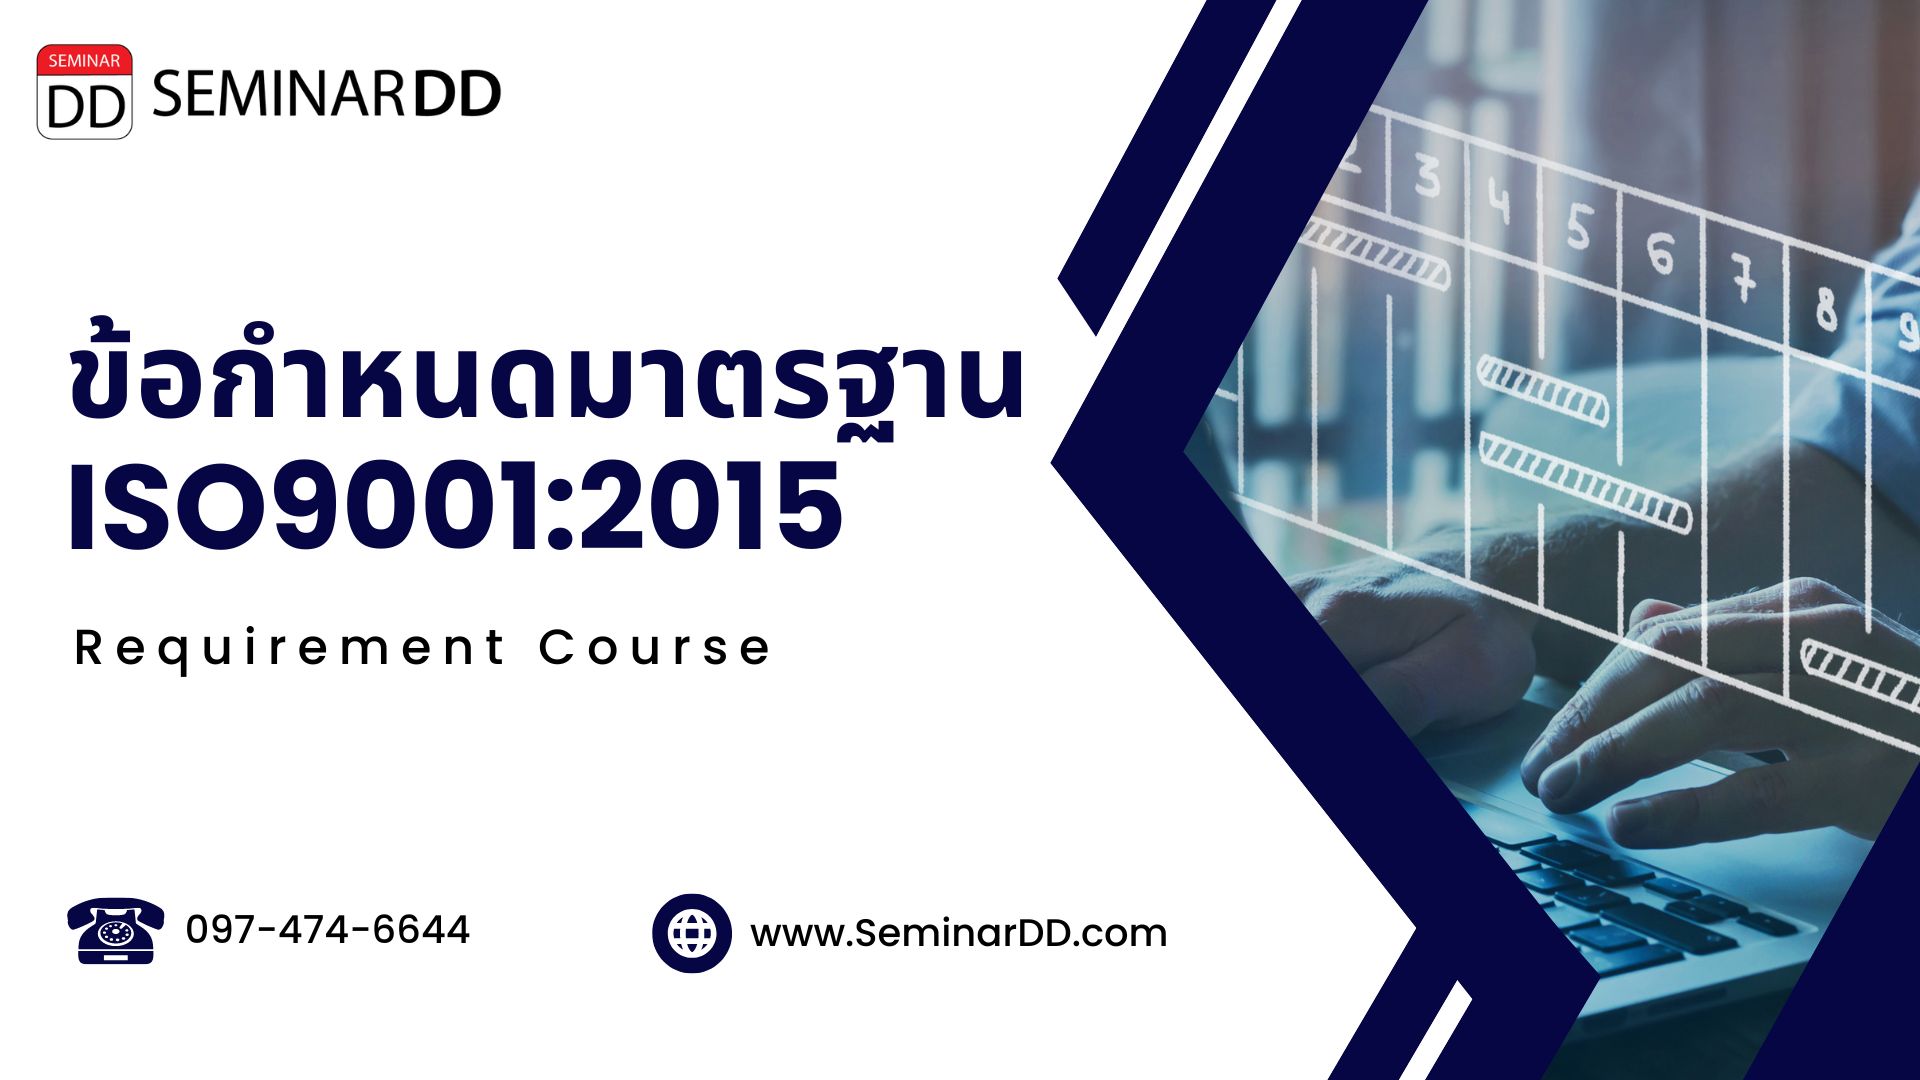 หลักสูตรข้อกำหนดของมาตรฐาน ISO 9001:2015 (ISO 9001:2015 Requirement Course)